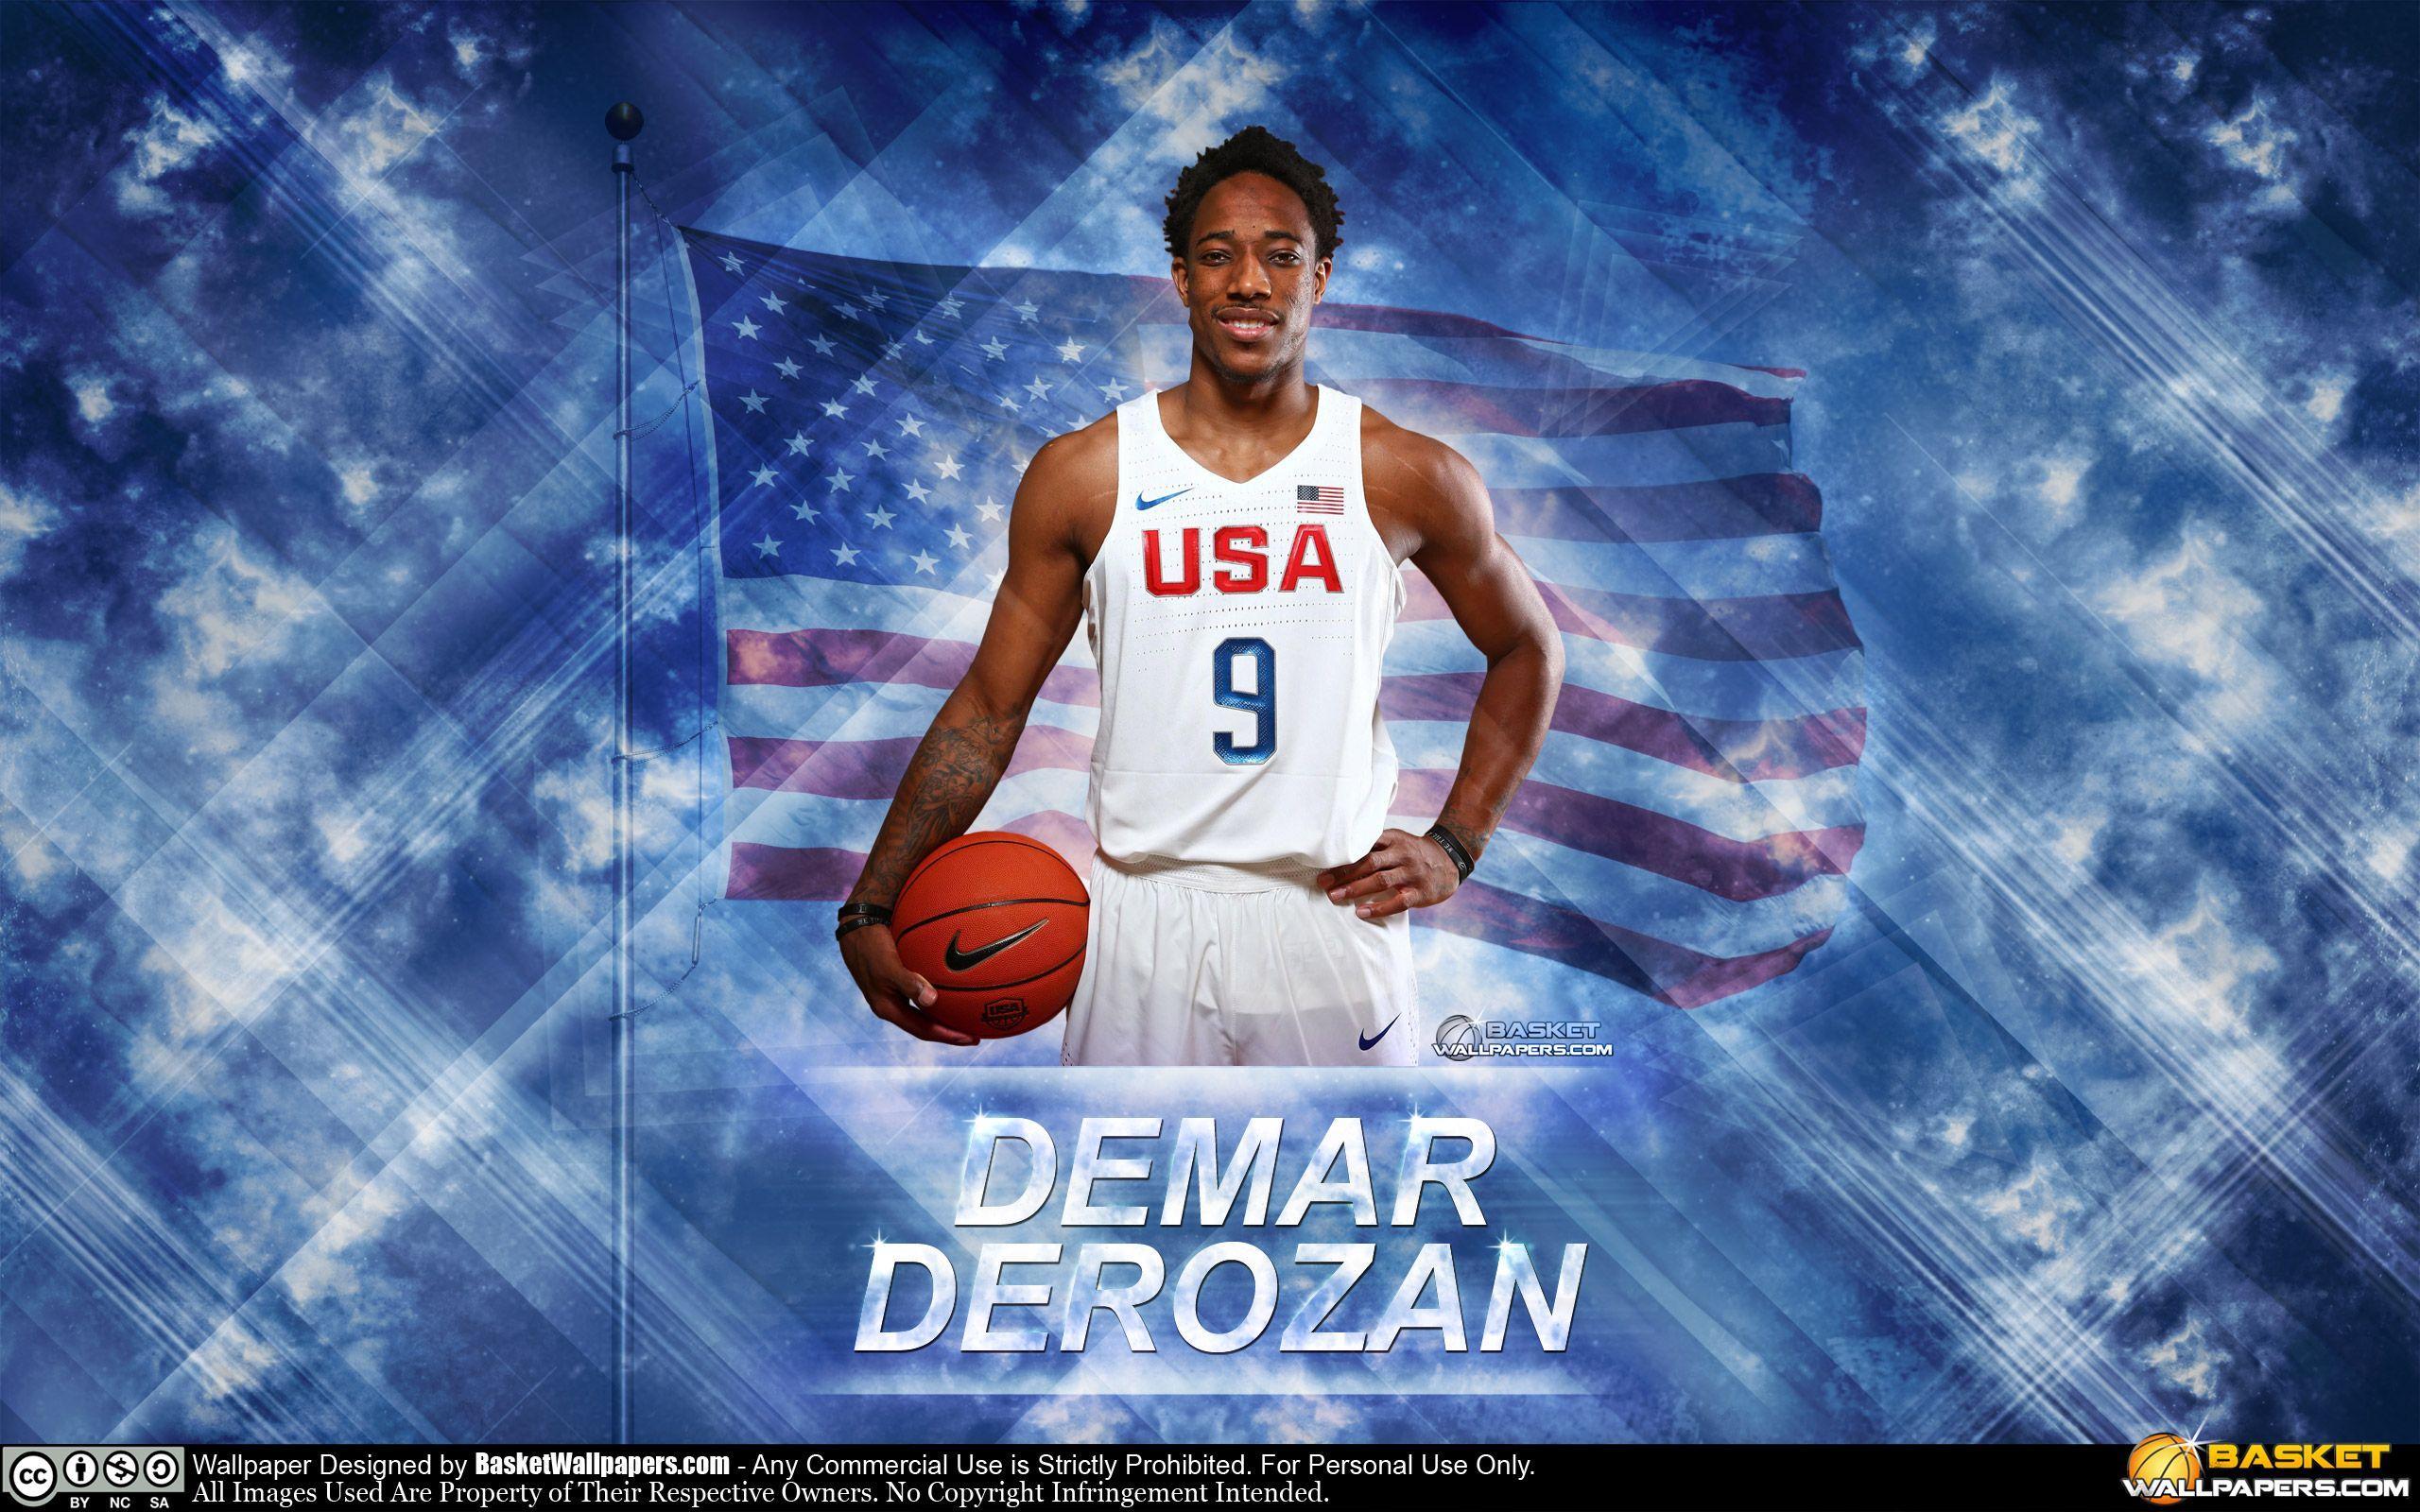 DeMar DeRozan USA 2016 Olympics Wallpaper. Basketball Wallpaper